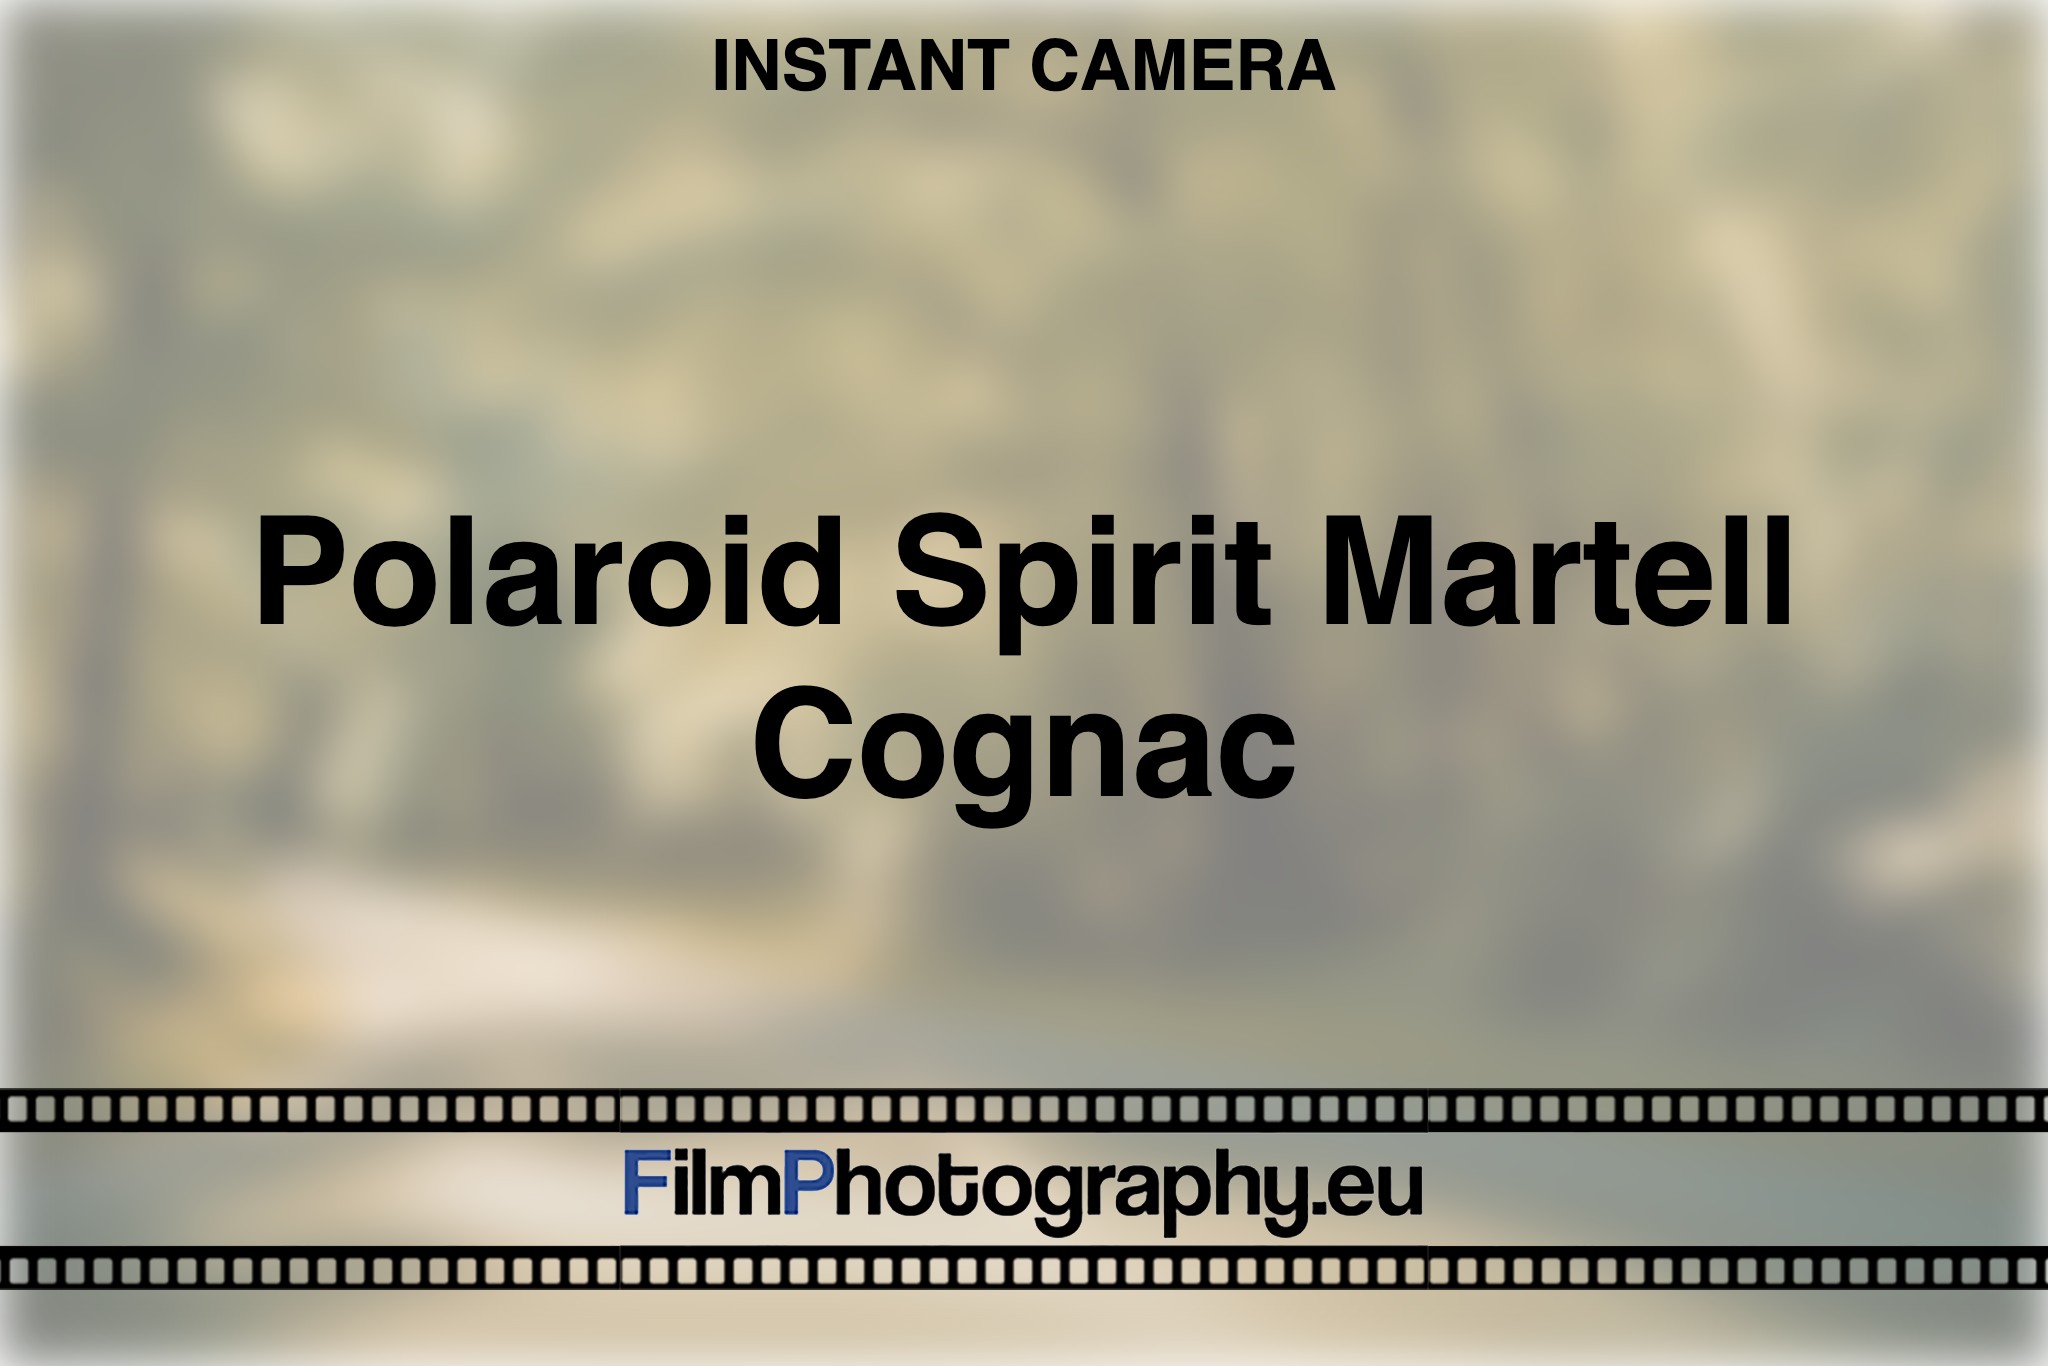 polaroid-spirit-martell-cognac-instant-camera-bnv